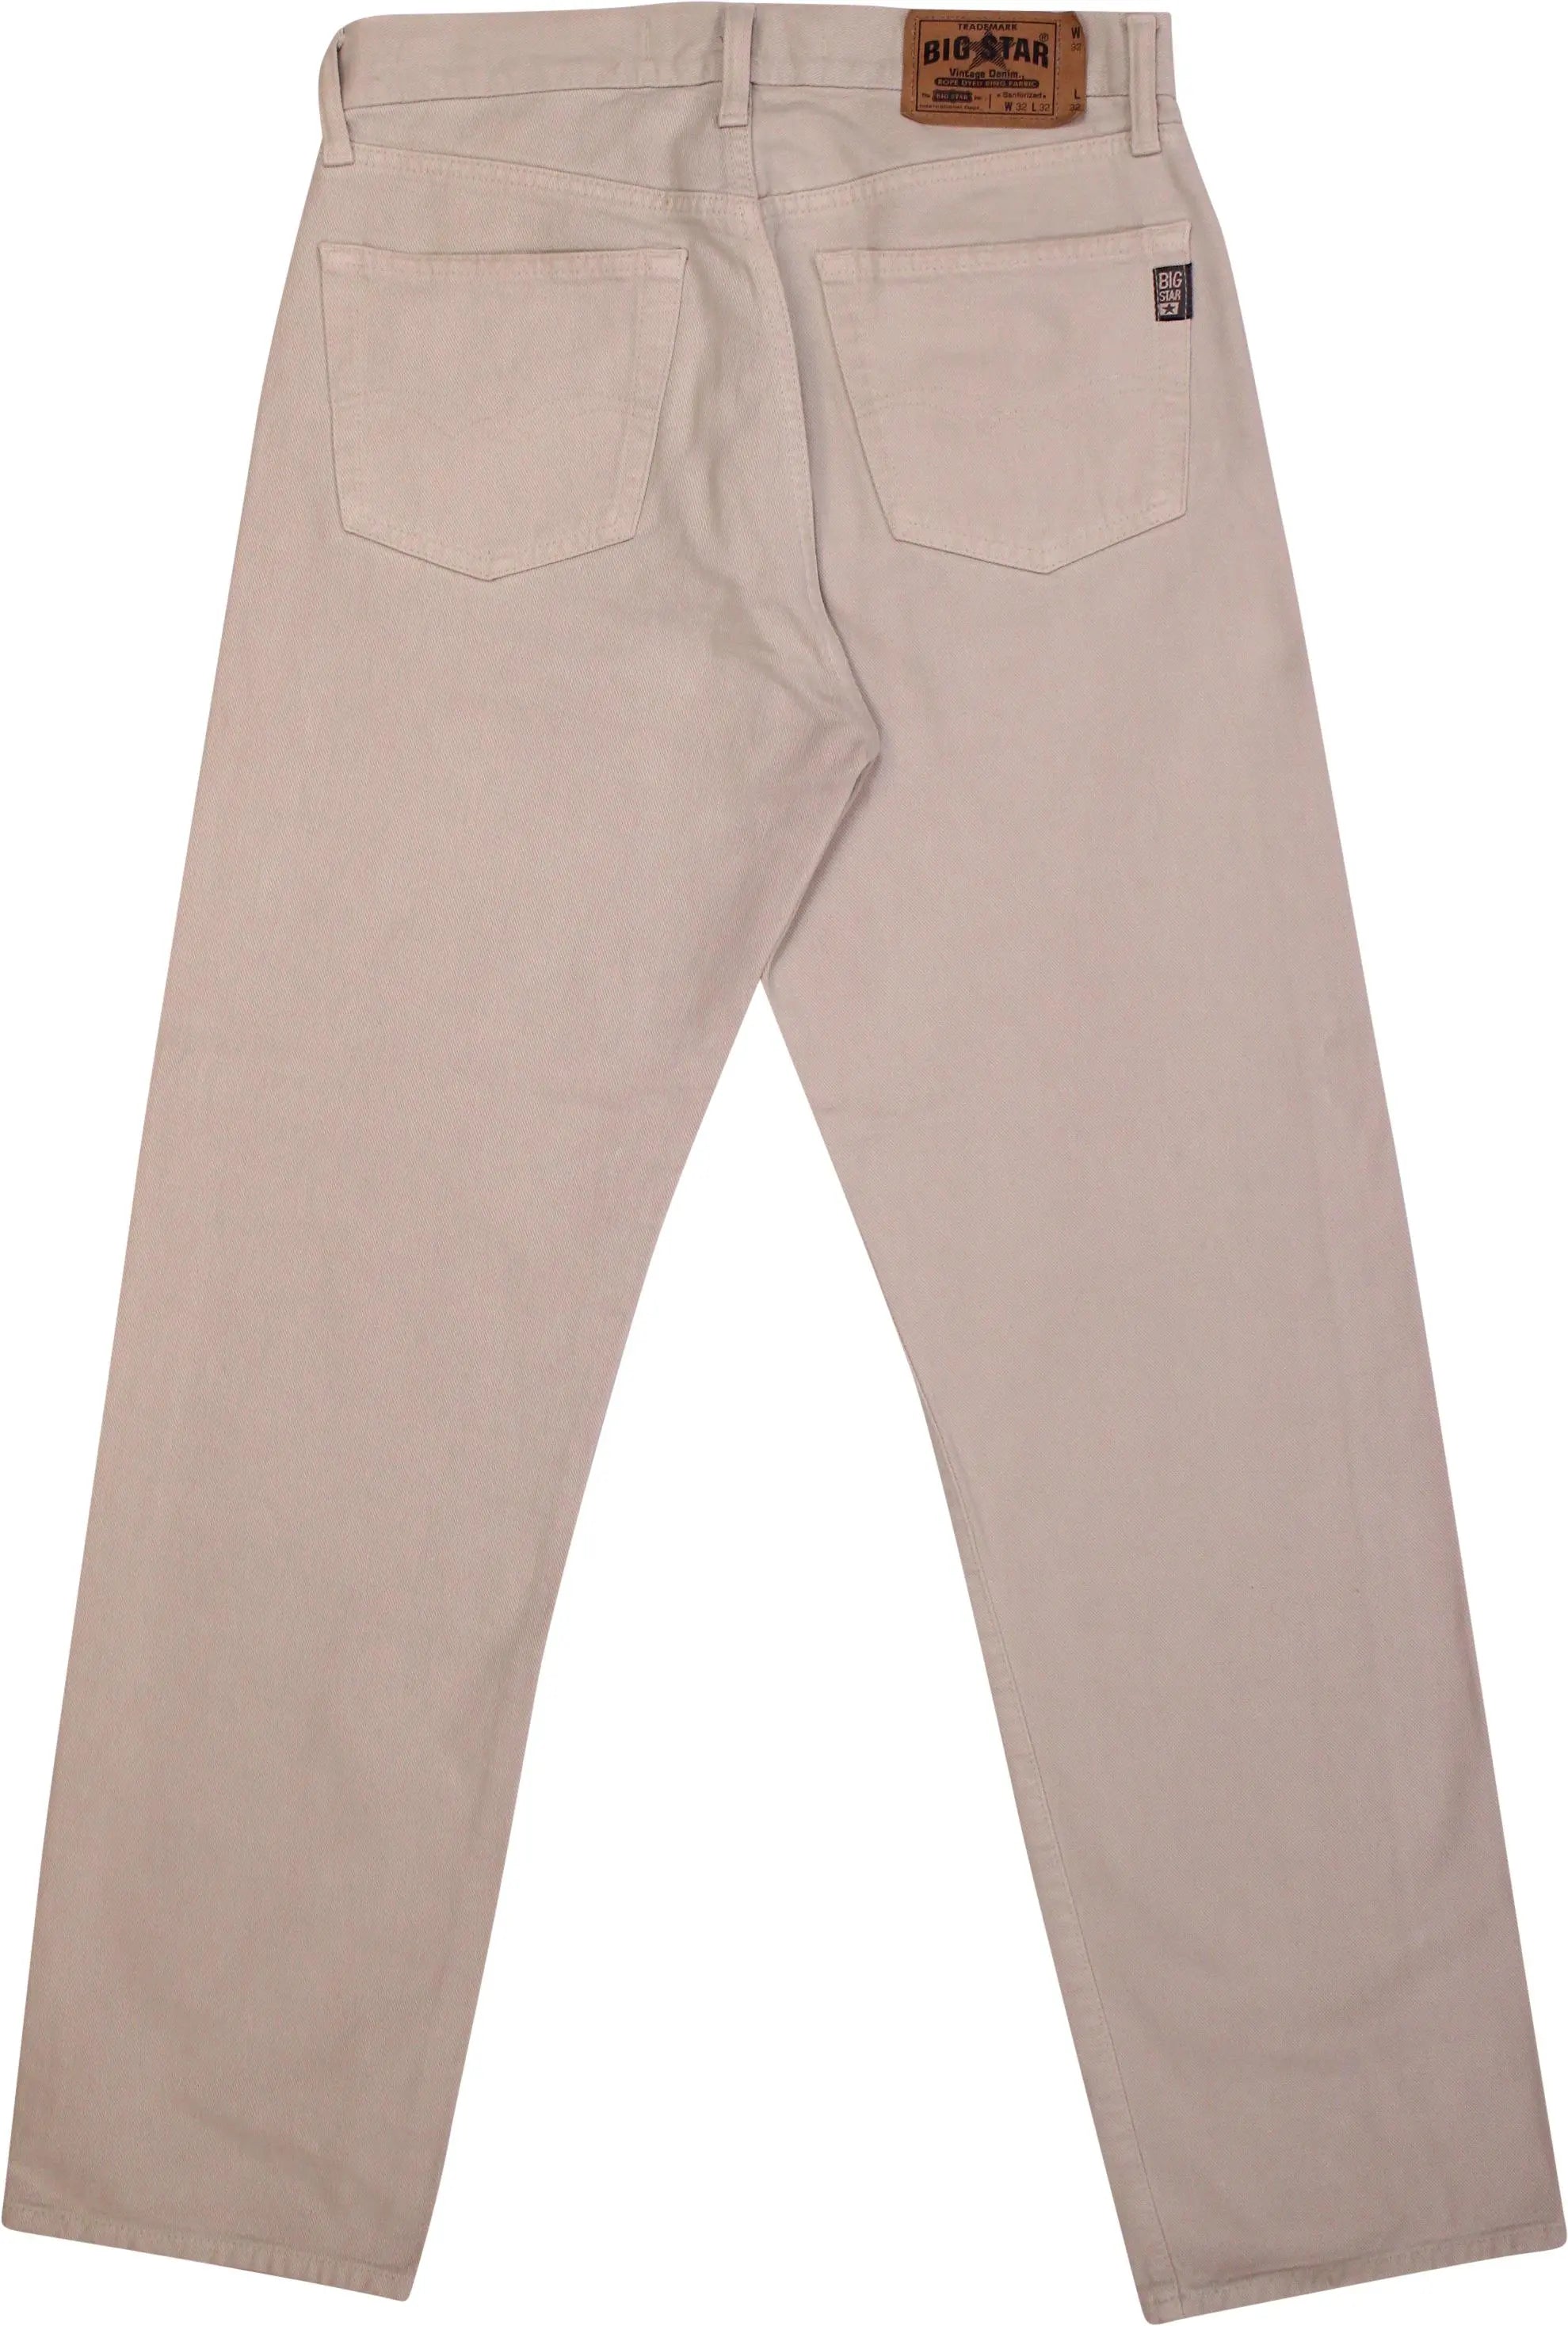 Big Star - Beige Regular Jeans- ThriftTale.com - Vintage and second handclothing